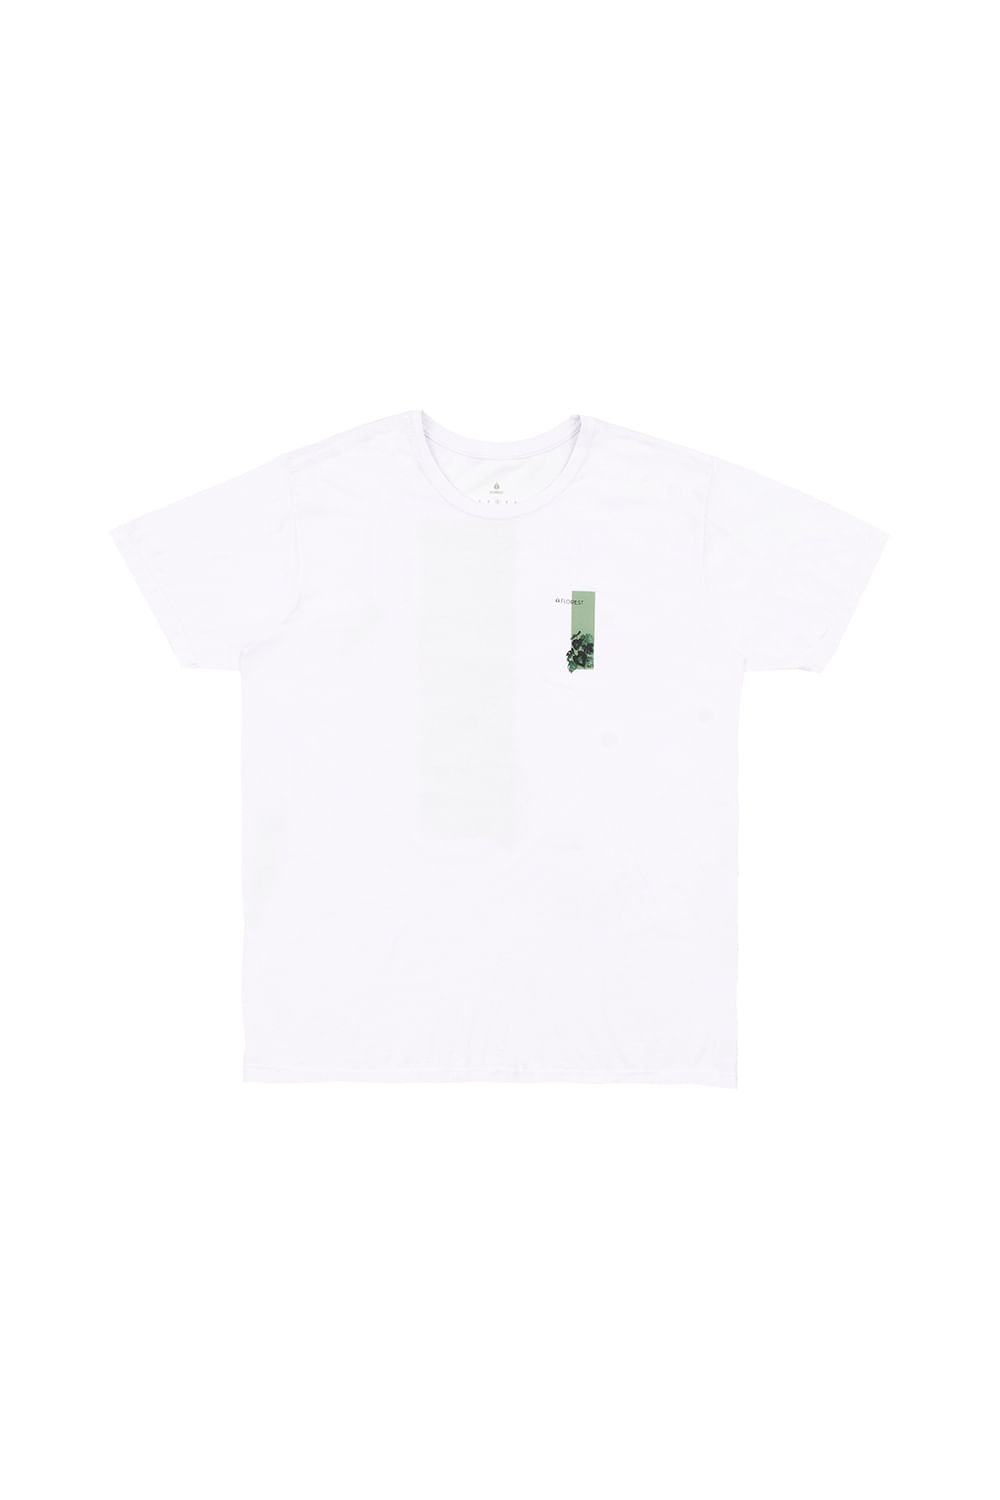 Camiseta-F.-Tropical-Branco-Detalhe